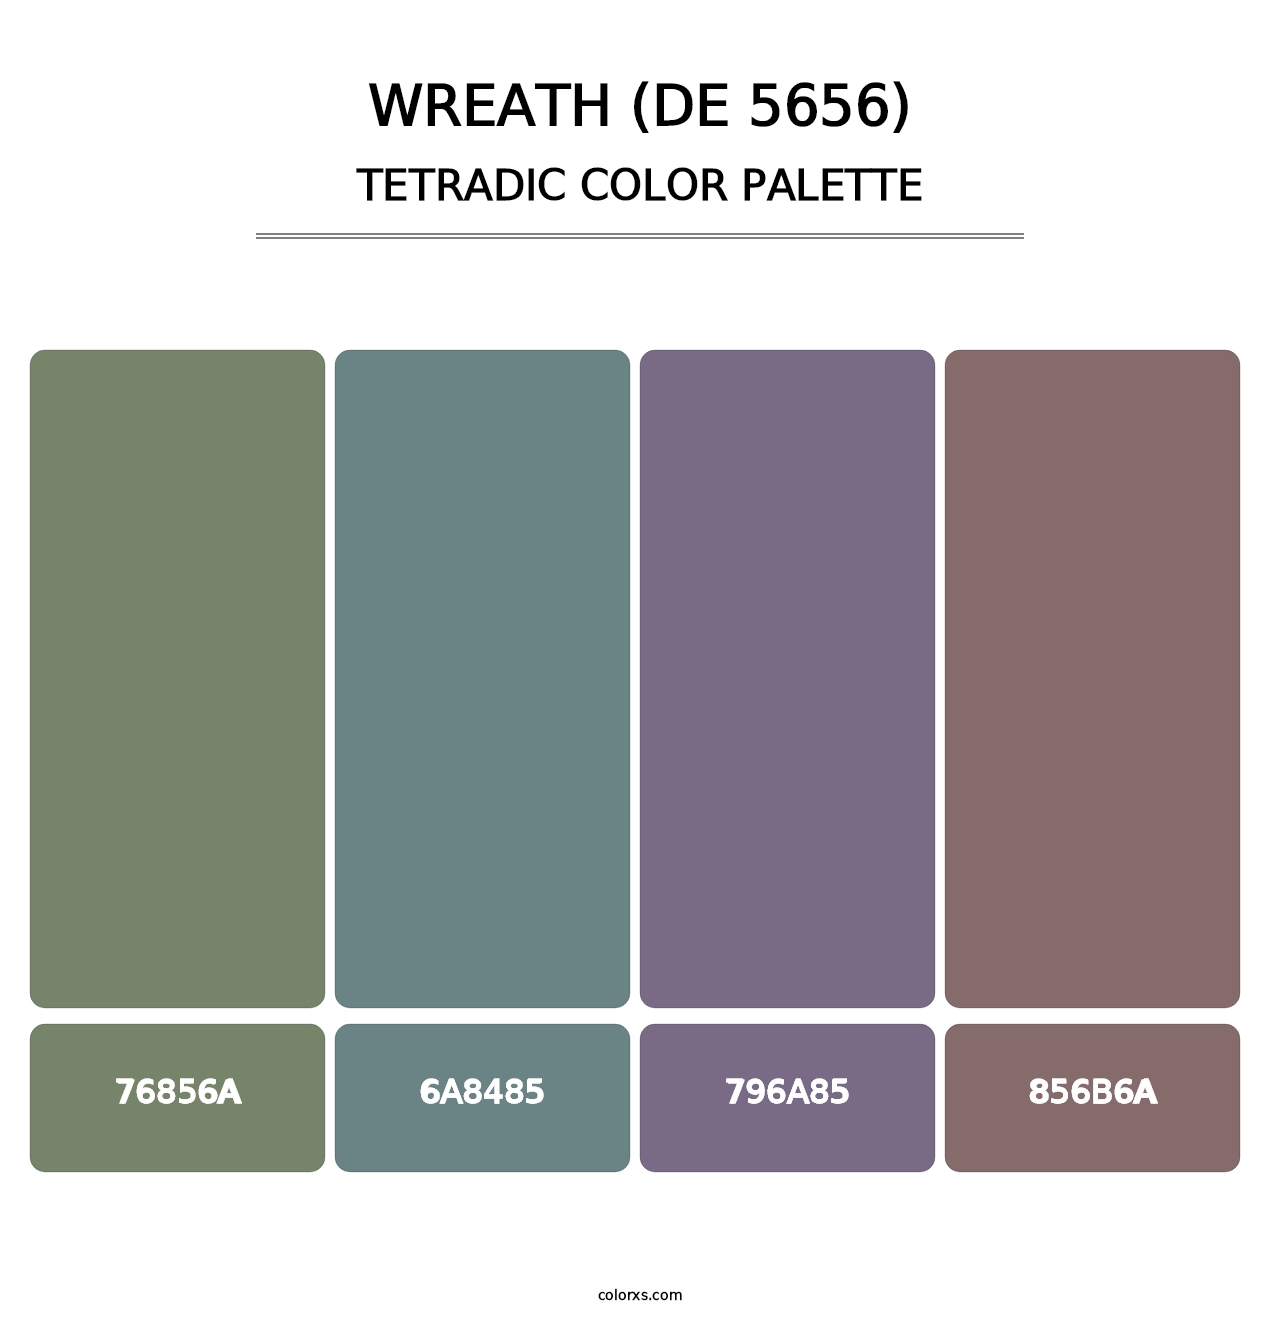 Wreath (DE 5656) - Tetradic Color Palette